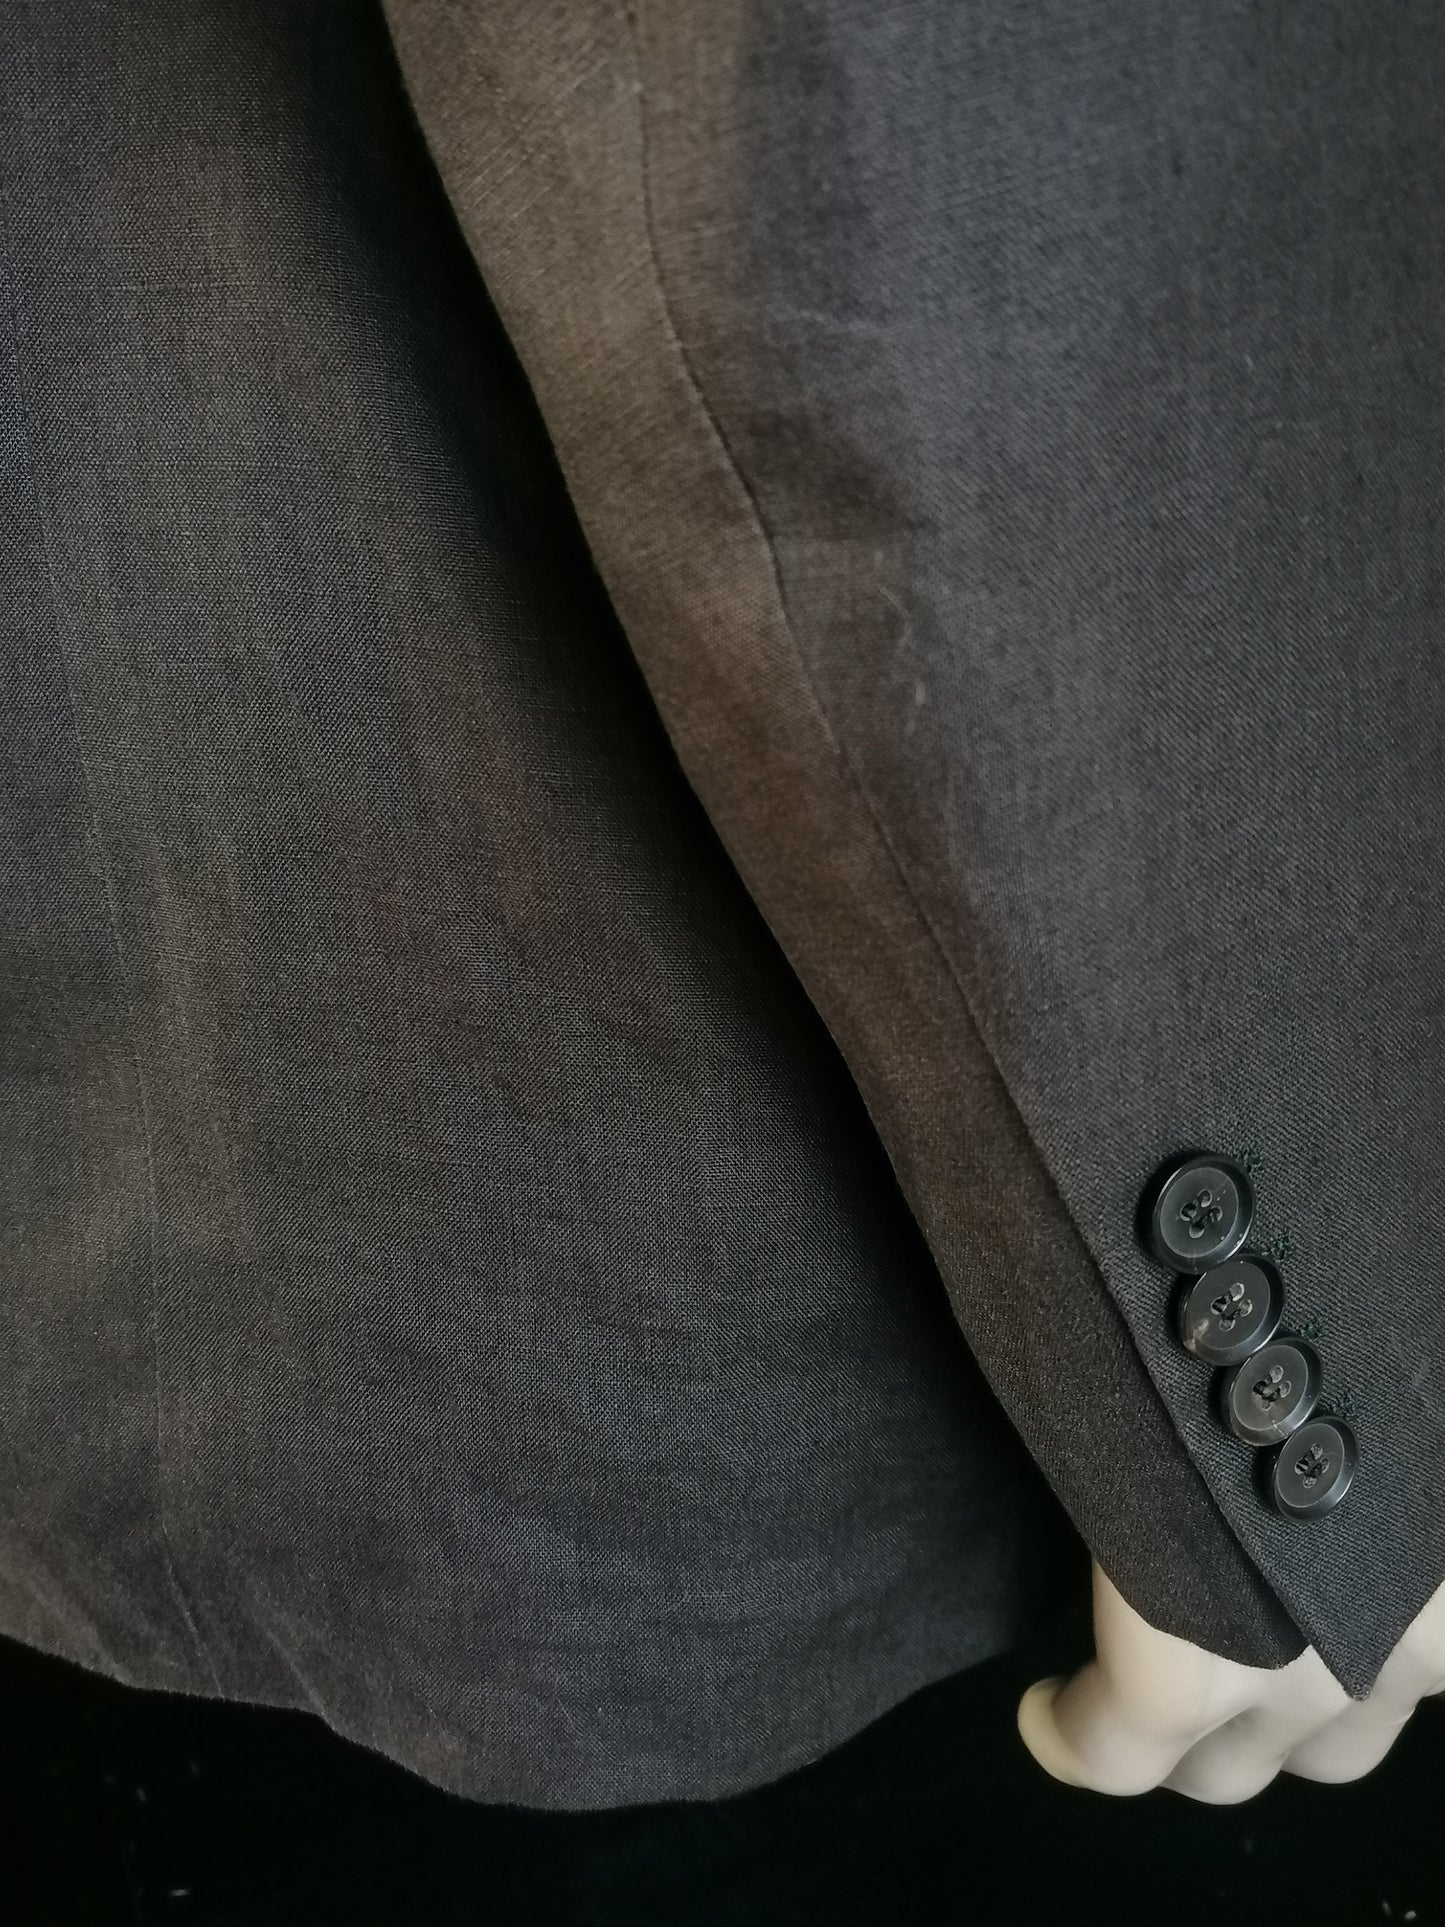 Hugo Boss linen costume. Dark gray colored. Size 52 / L.